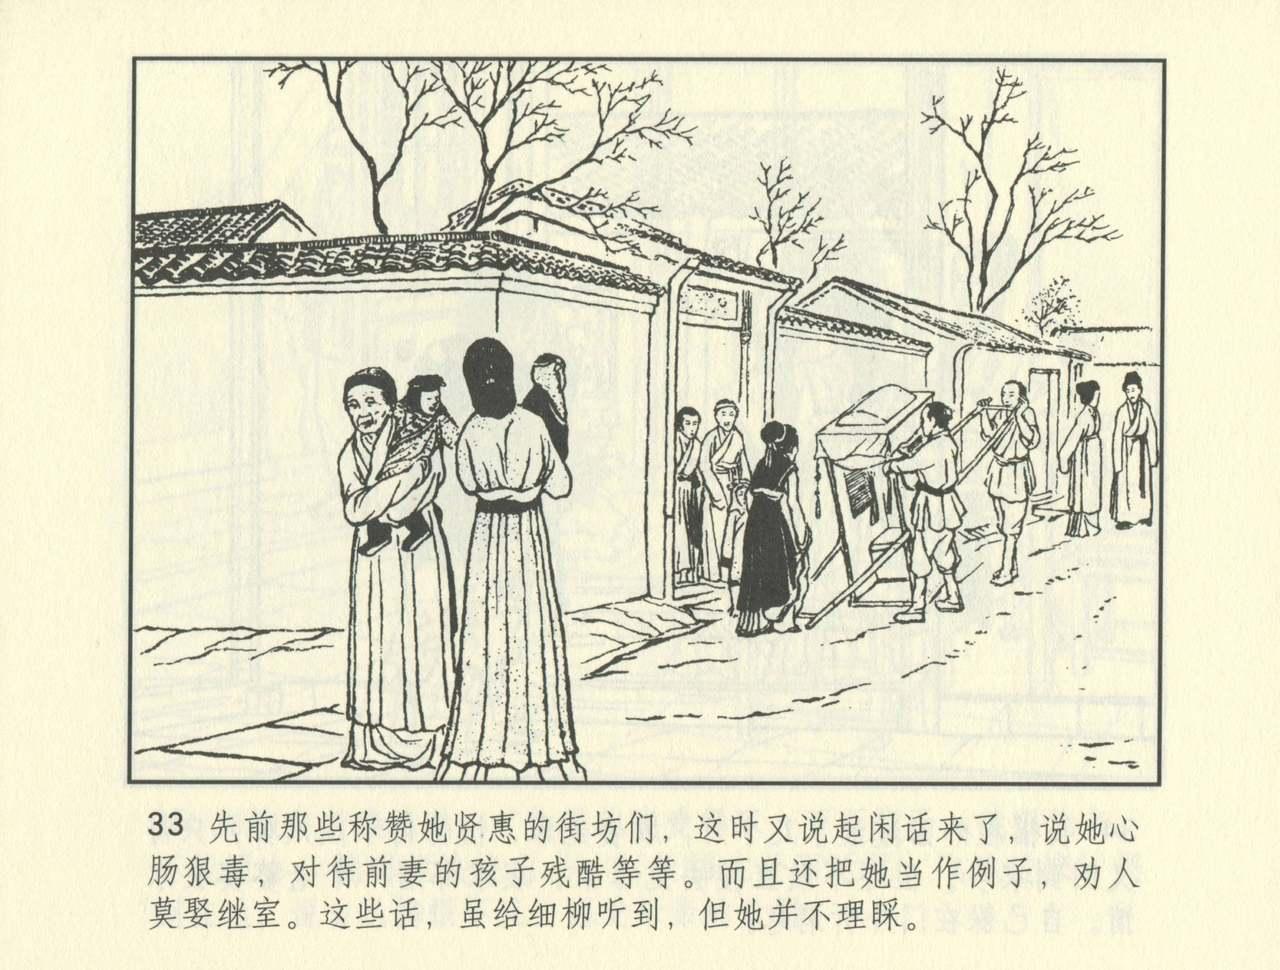 聊斋志异 张玮等绘 天津人民美术出版社 卷二十一 ~ 三十 505